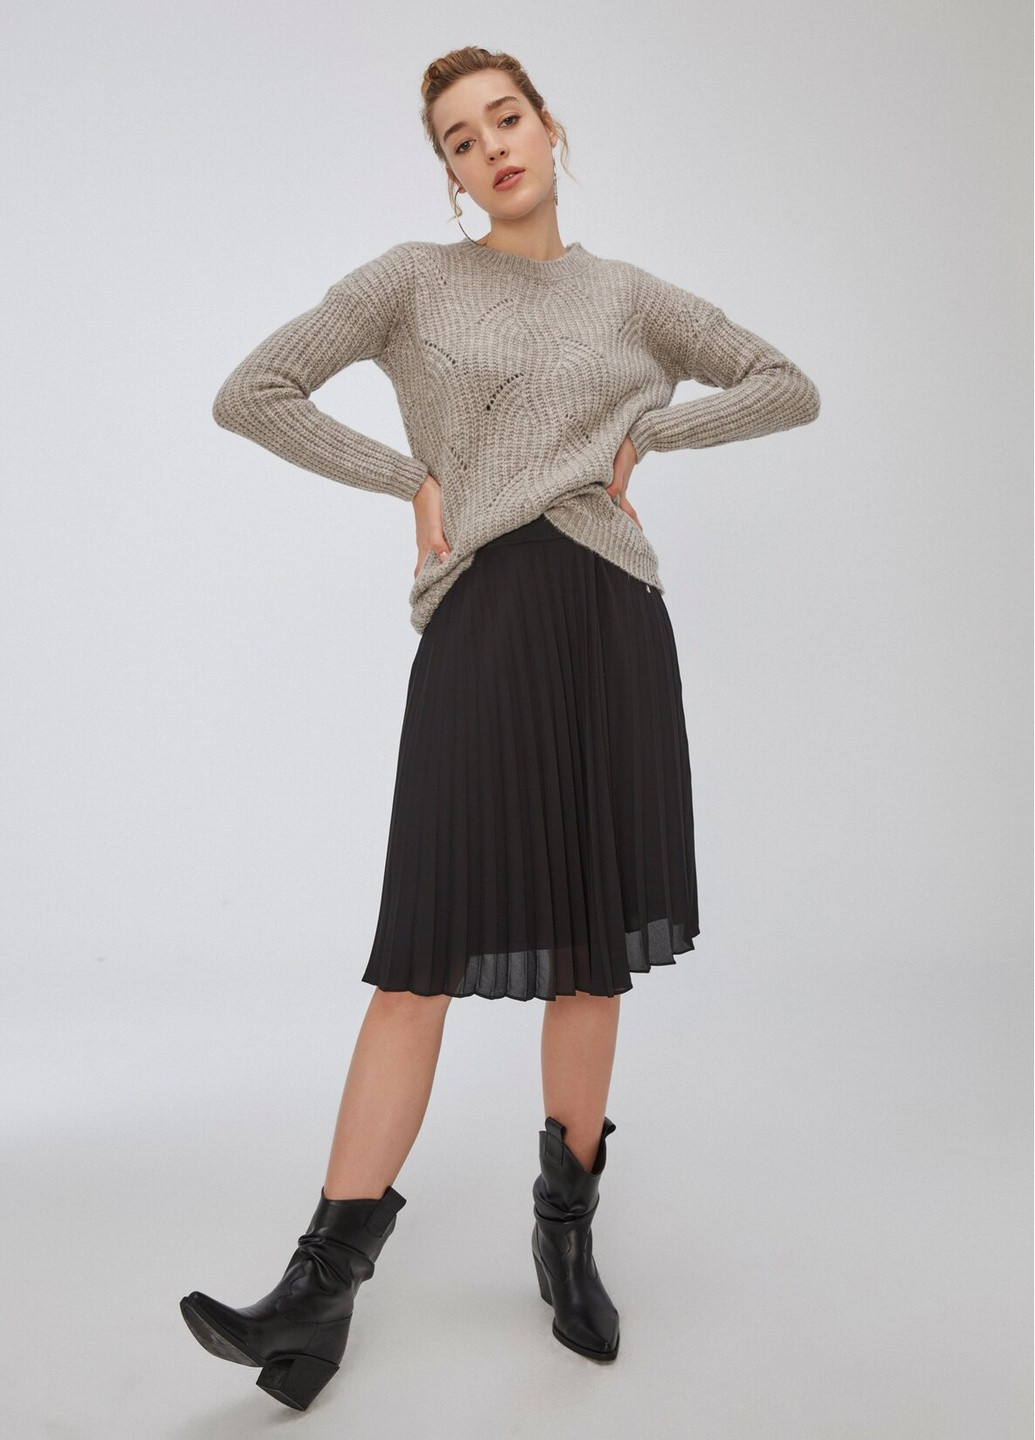 Серо-бежевый демисезонный свитер женский свободного кроя пуловер Nobrend